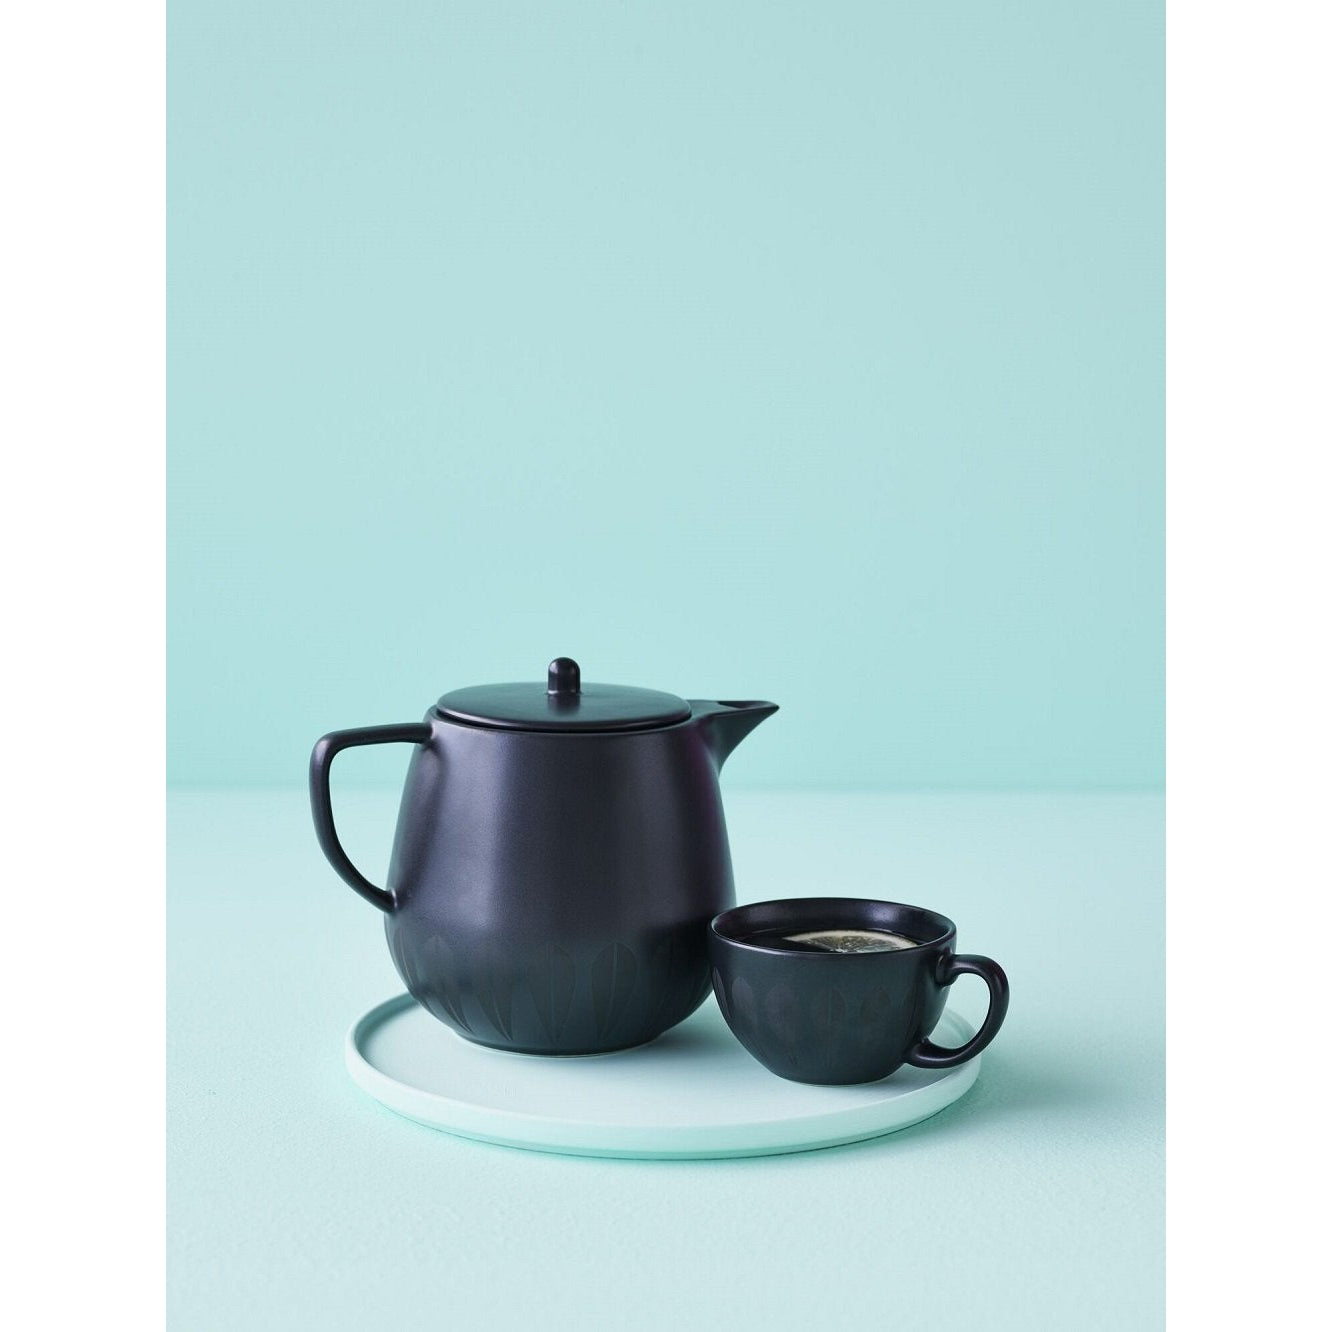 Lucie Kaas Arne Clausen Collection Teapot, šedá